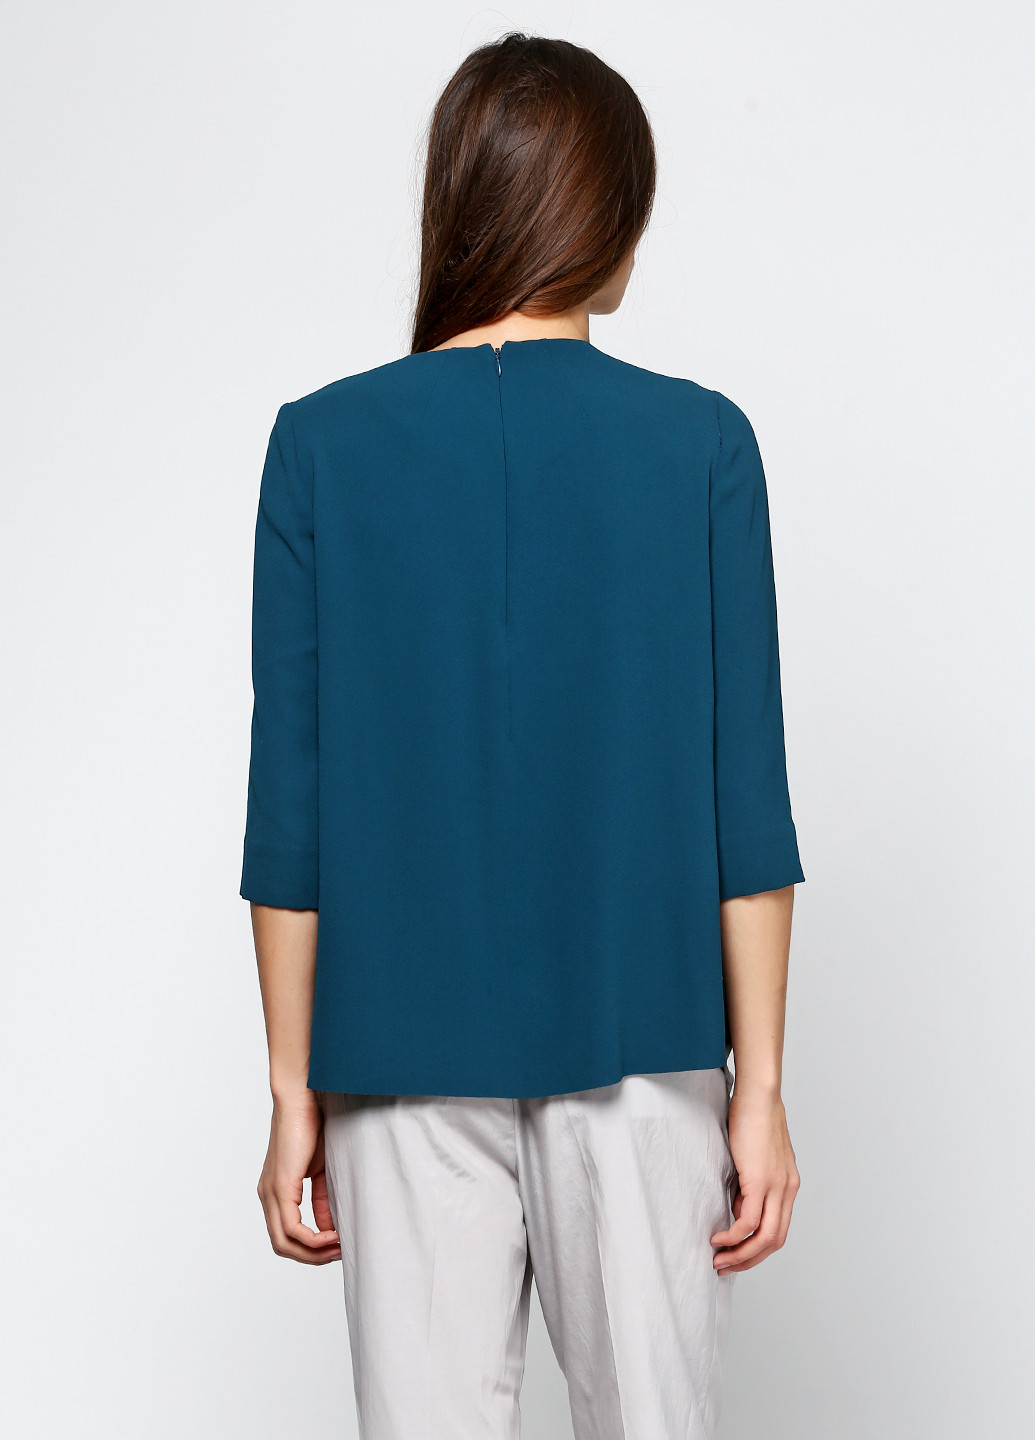 Зеленая демисезонная блуза Cos